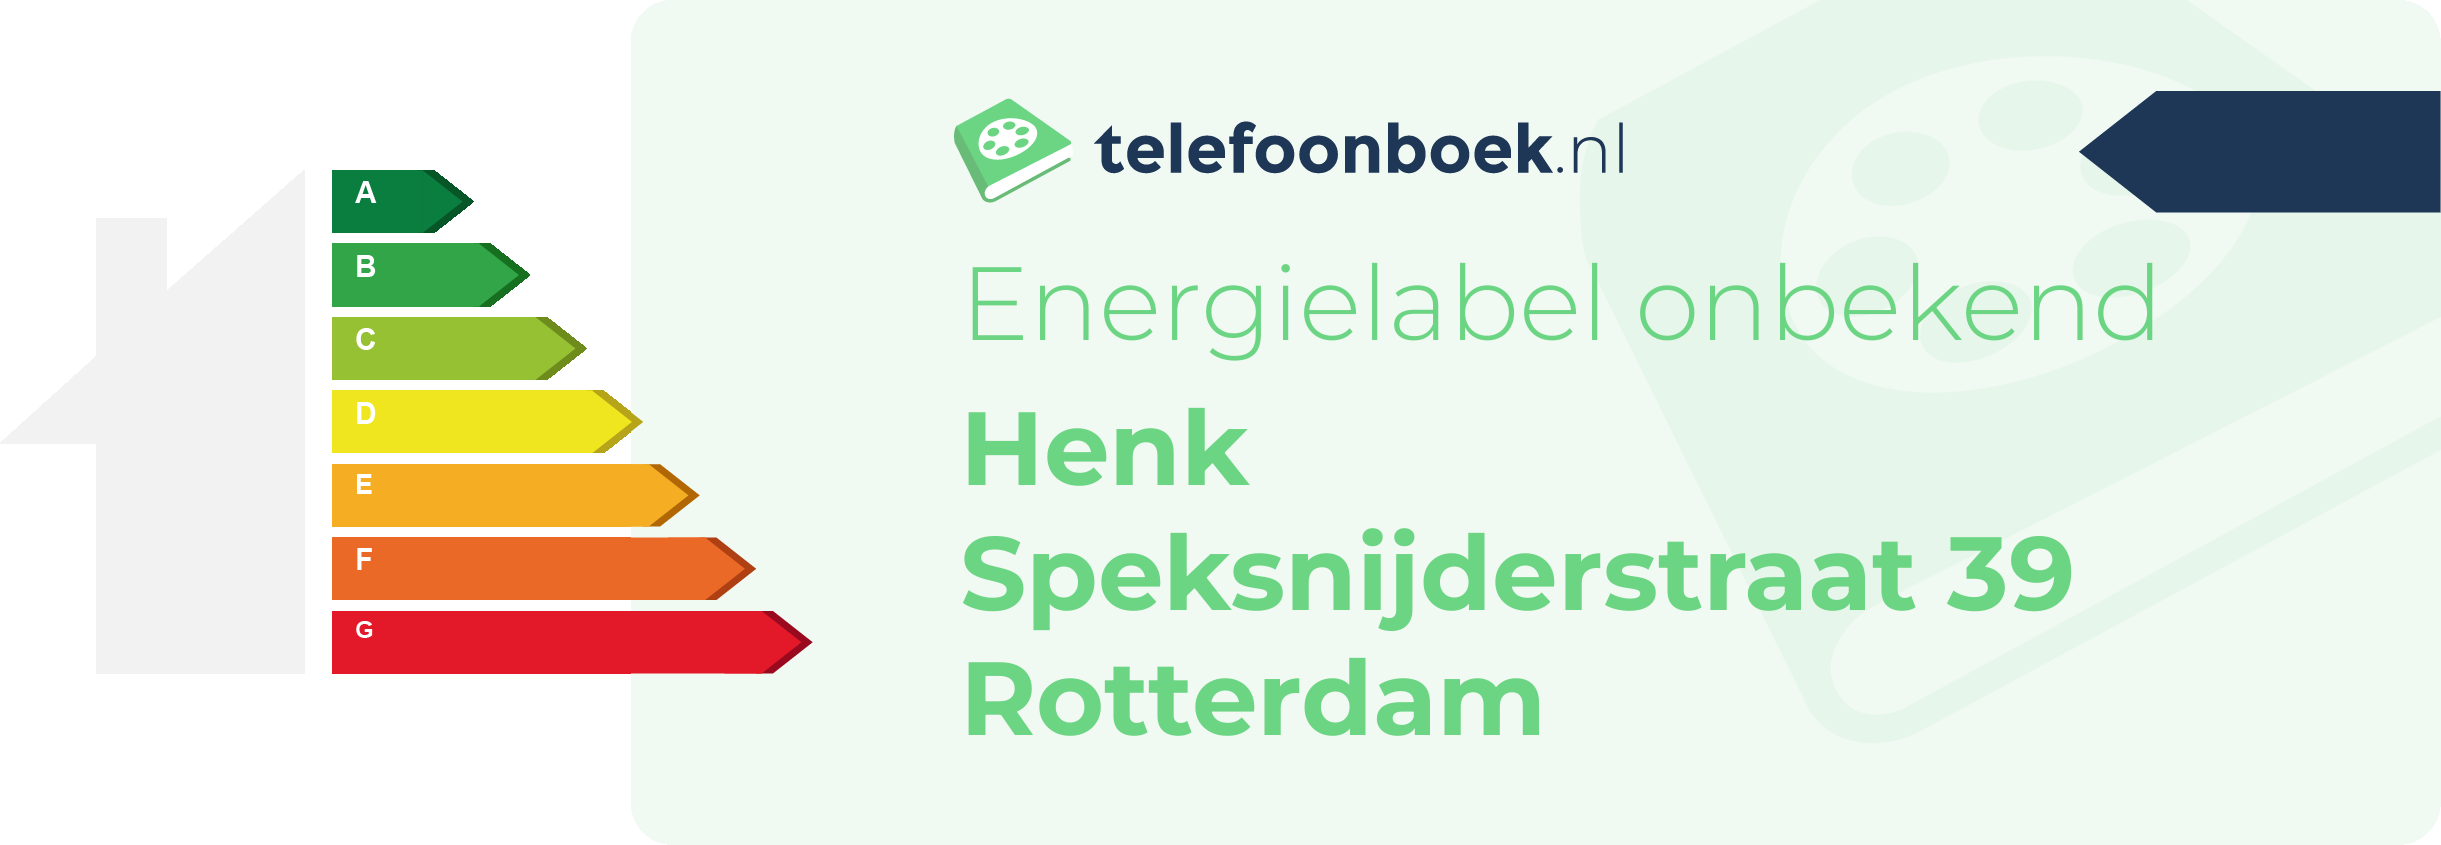 Energielabel Henk Speksnijderstraat 39 Rotterdam